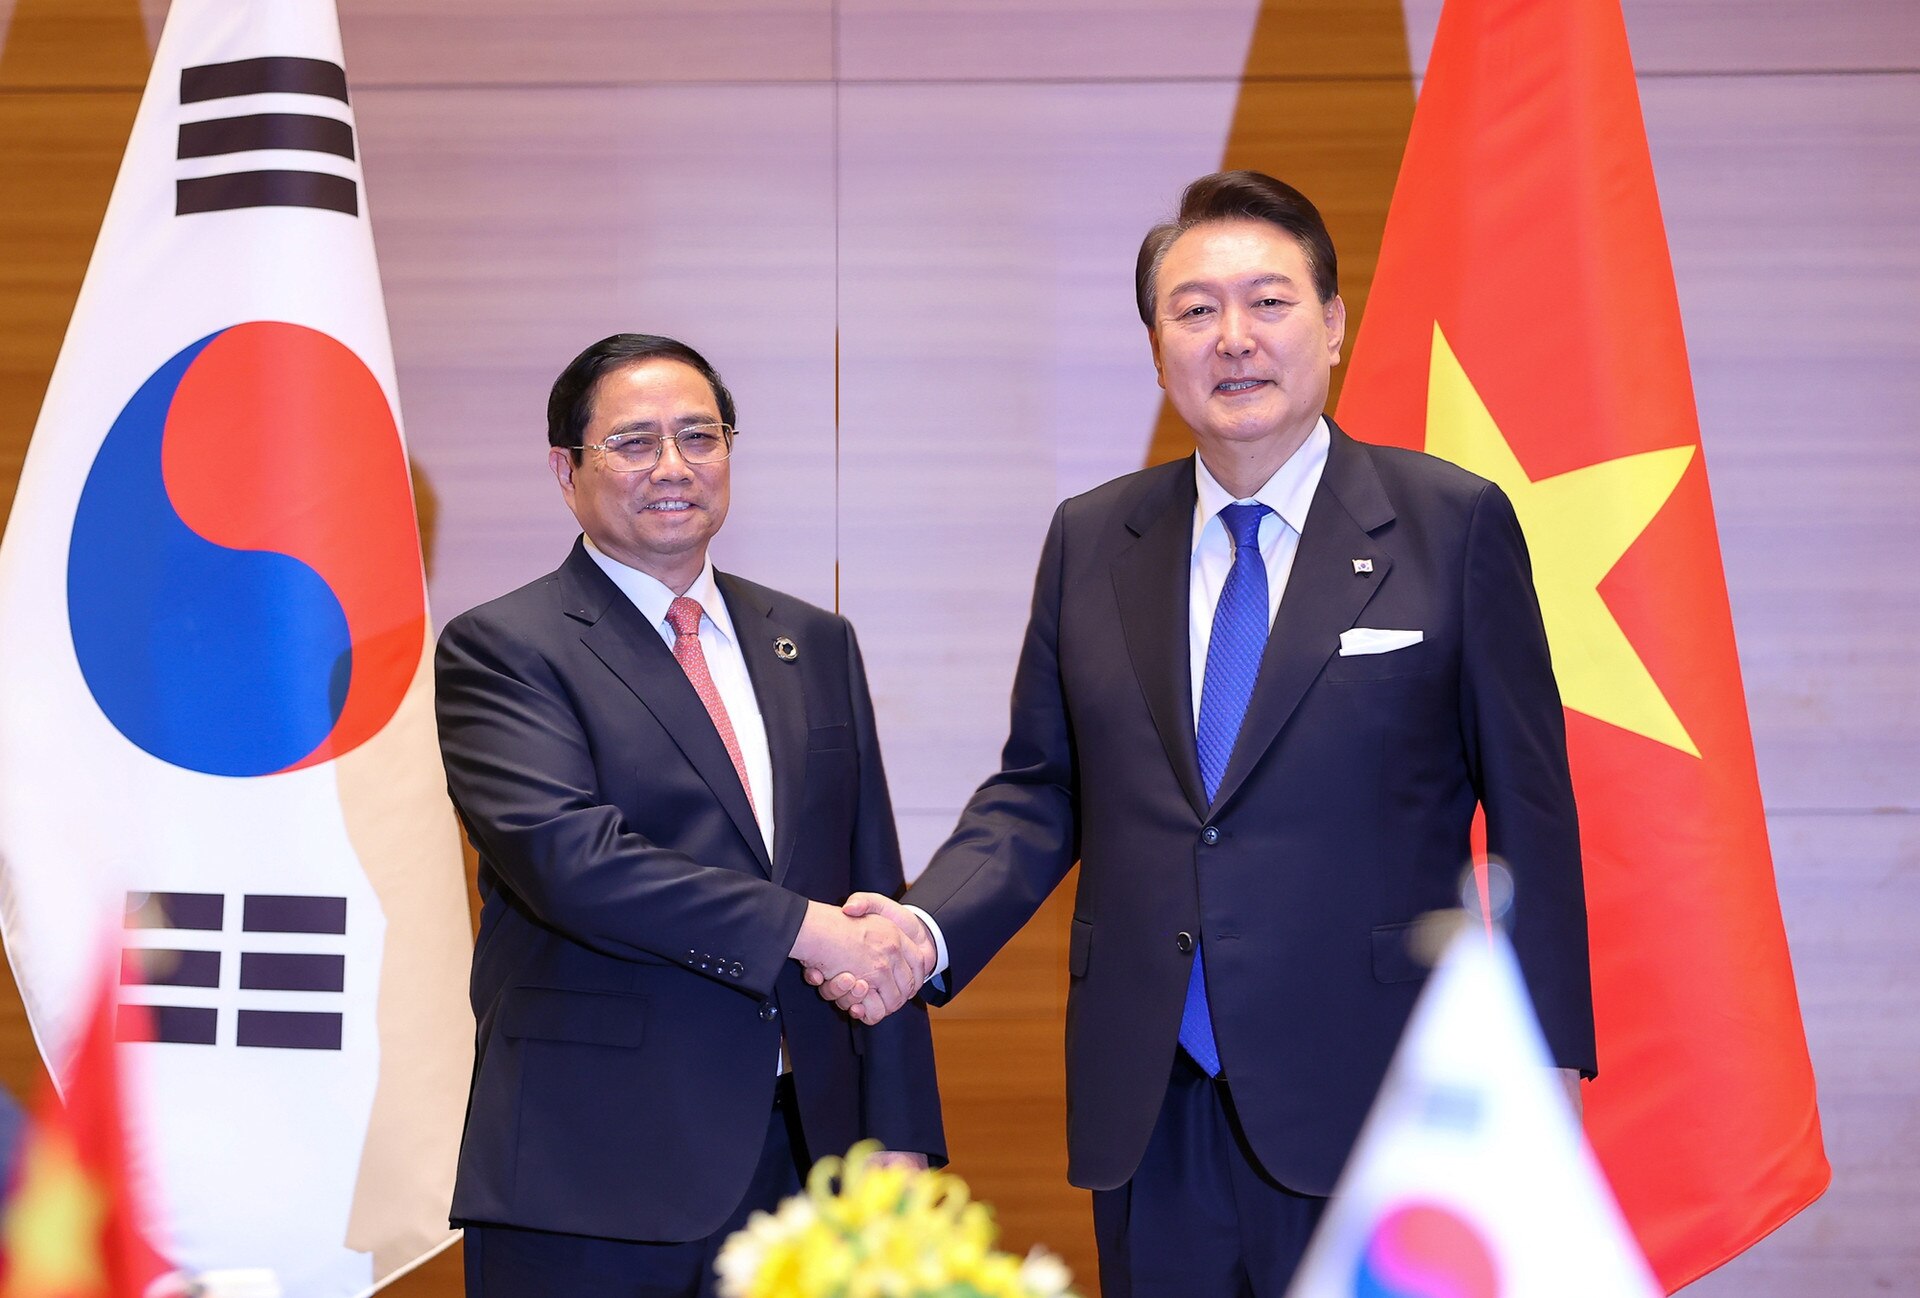 นายกรัฐมนตรี ฝ่ามมิงห์จิญ พบกับประธานาธิบดีแห่งสาธารณรัฐเกาหลี เนื่องในโอกาสขยายการประชุมสุดยอด G7 - รูปที่ 1